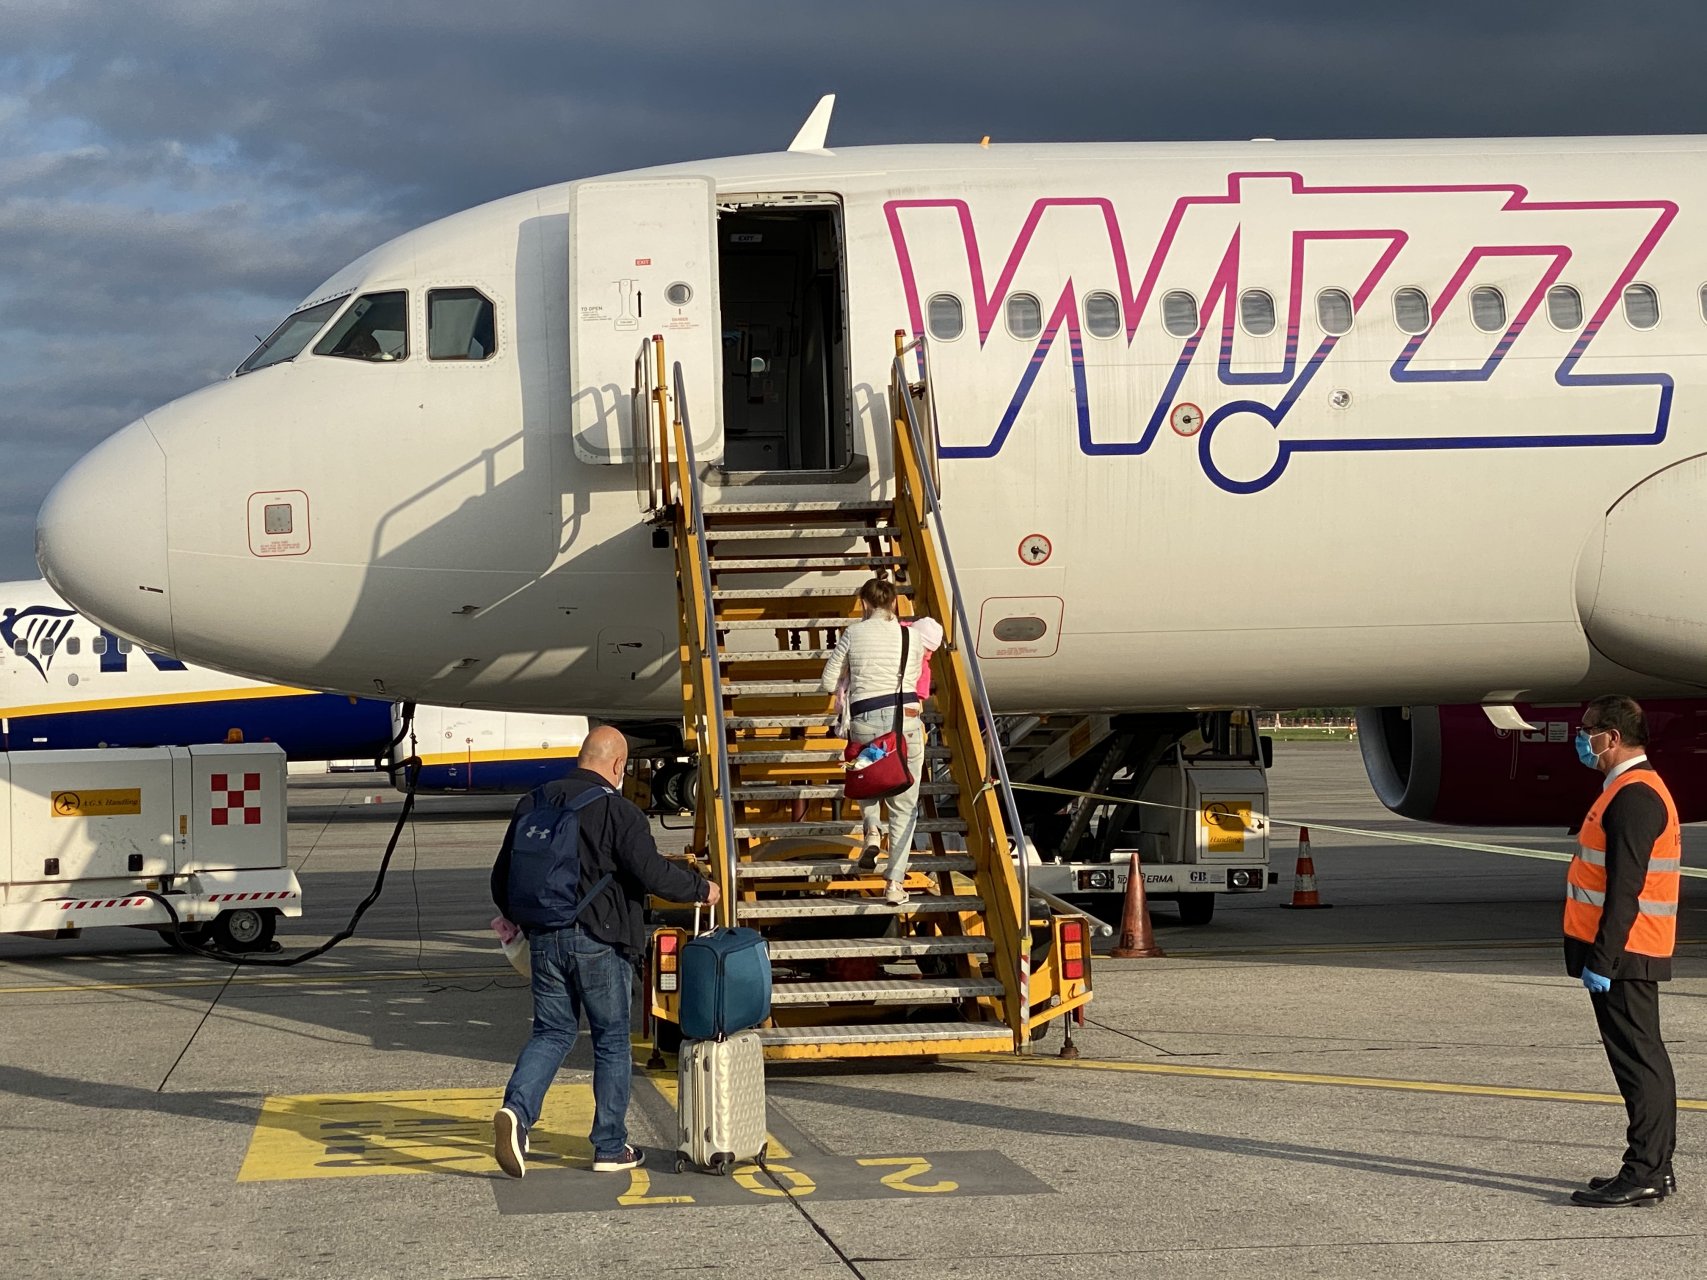 Imbarco volo Wizzair per Sofia